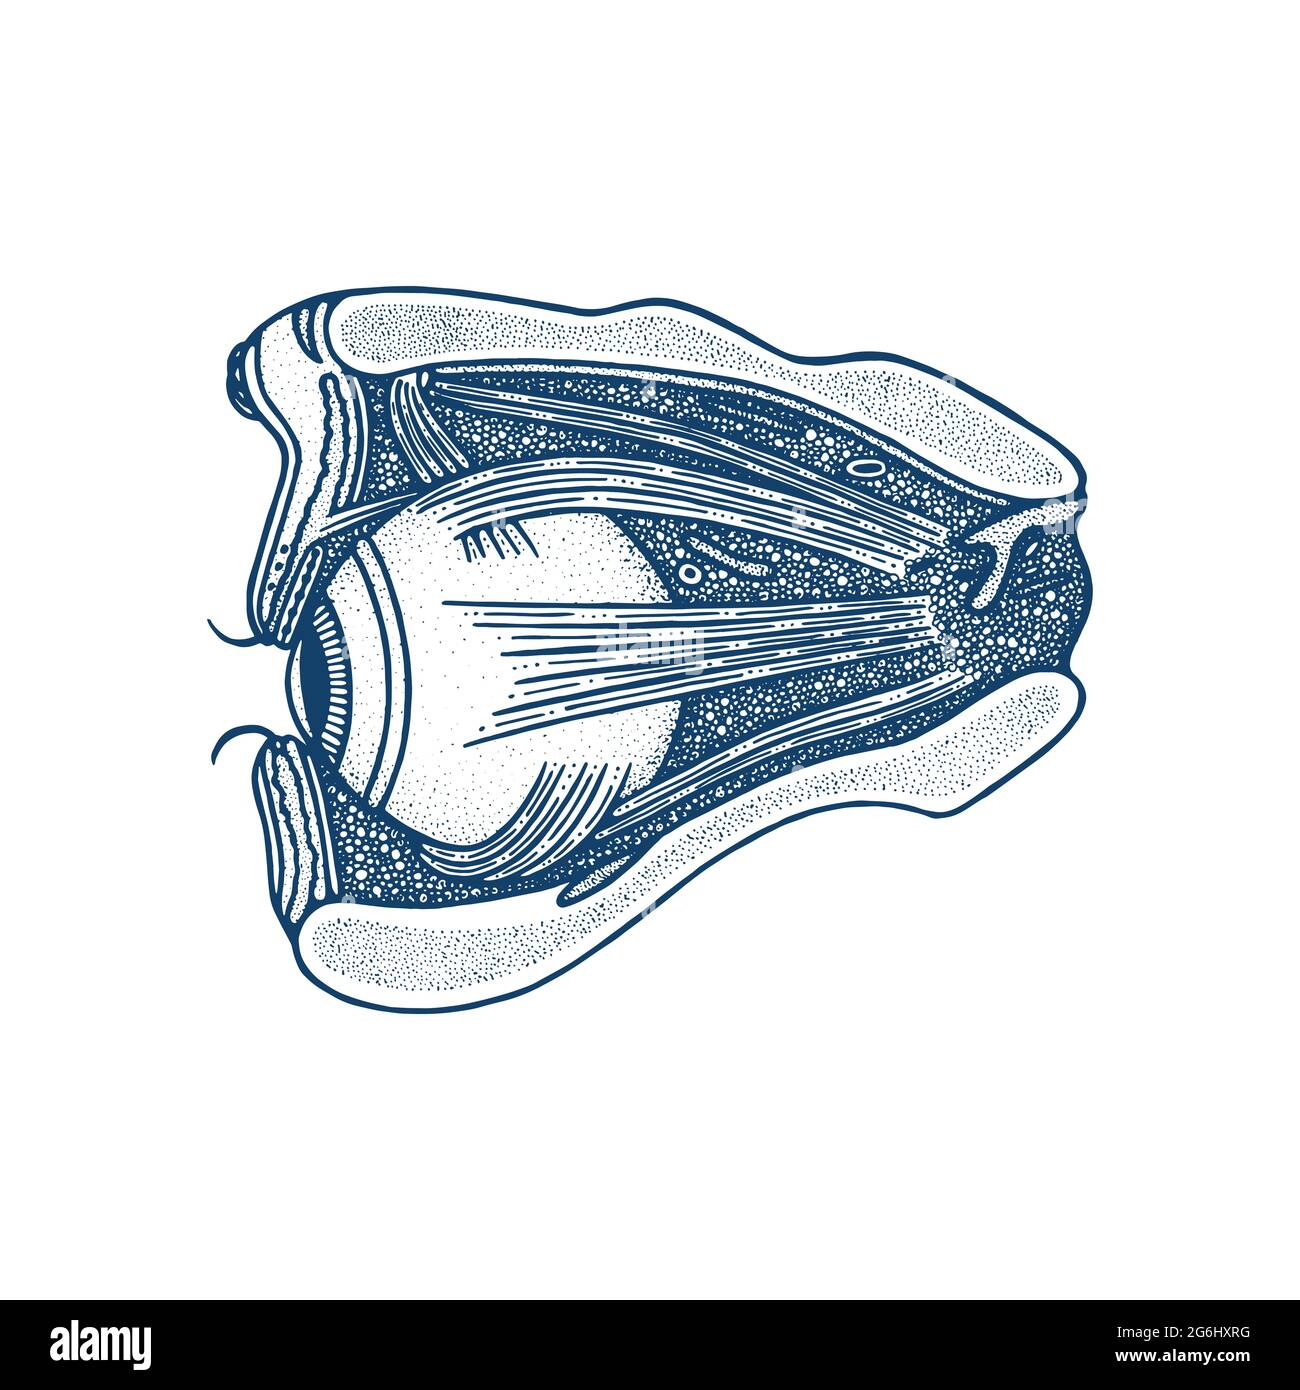 Illustration vectorielle de l'anatomie de l'œil dessinée à la main. Oeil, muscles et crâne coupe transversale vintage gravure style dessin. Pièces internes de l'œil humain. Illustration de Vecteur